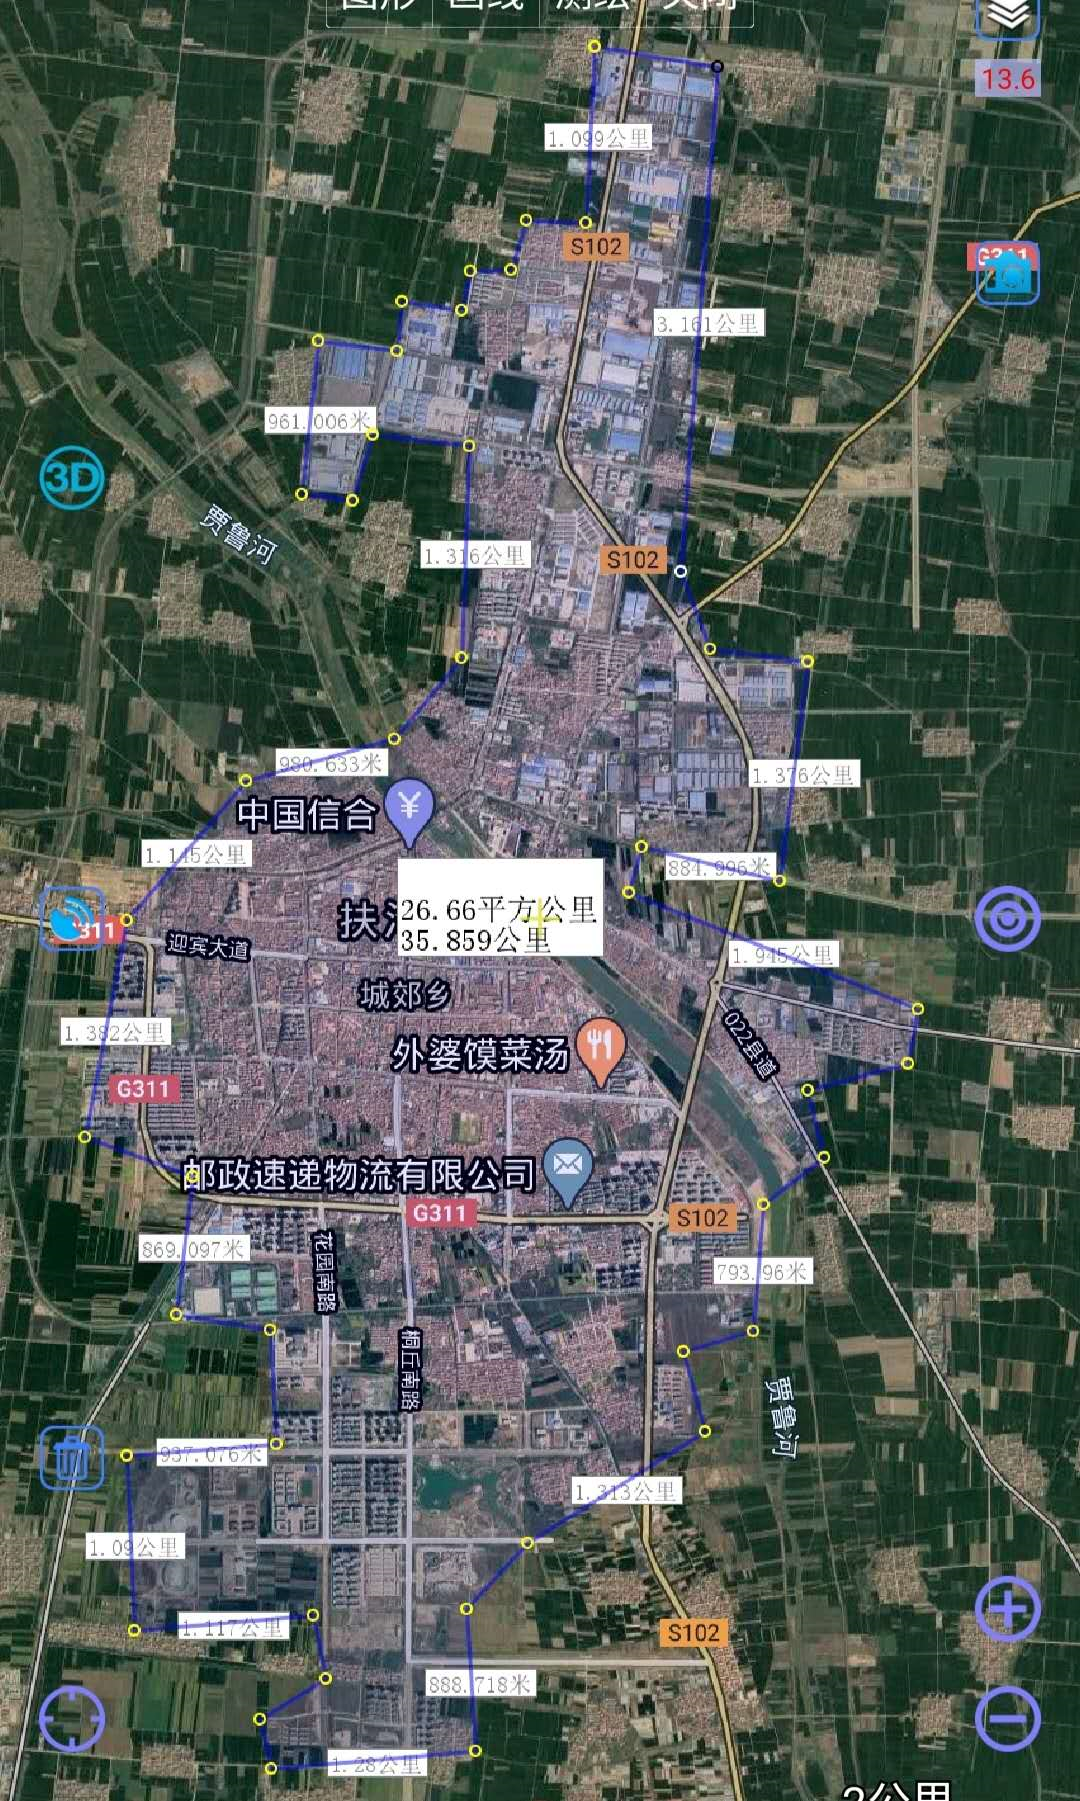 西华县规划图高清图片